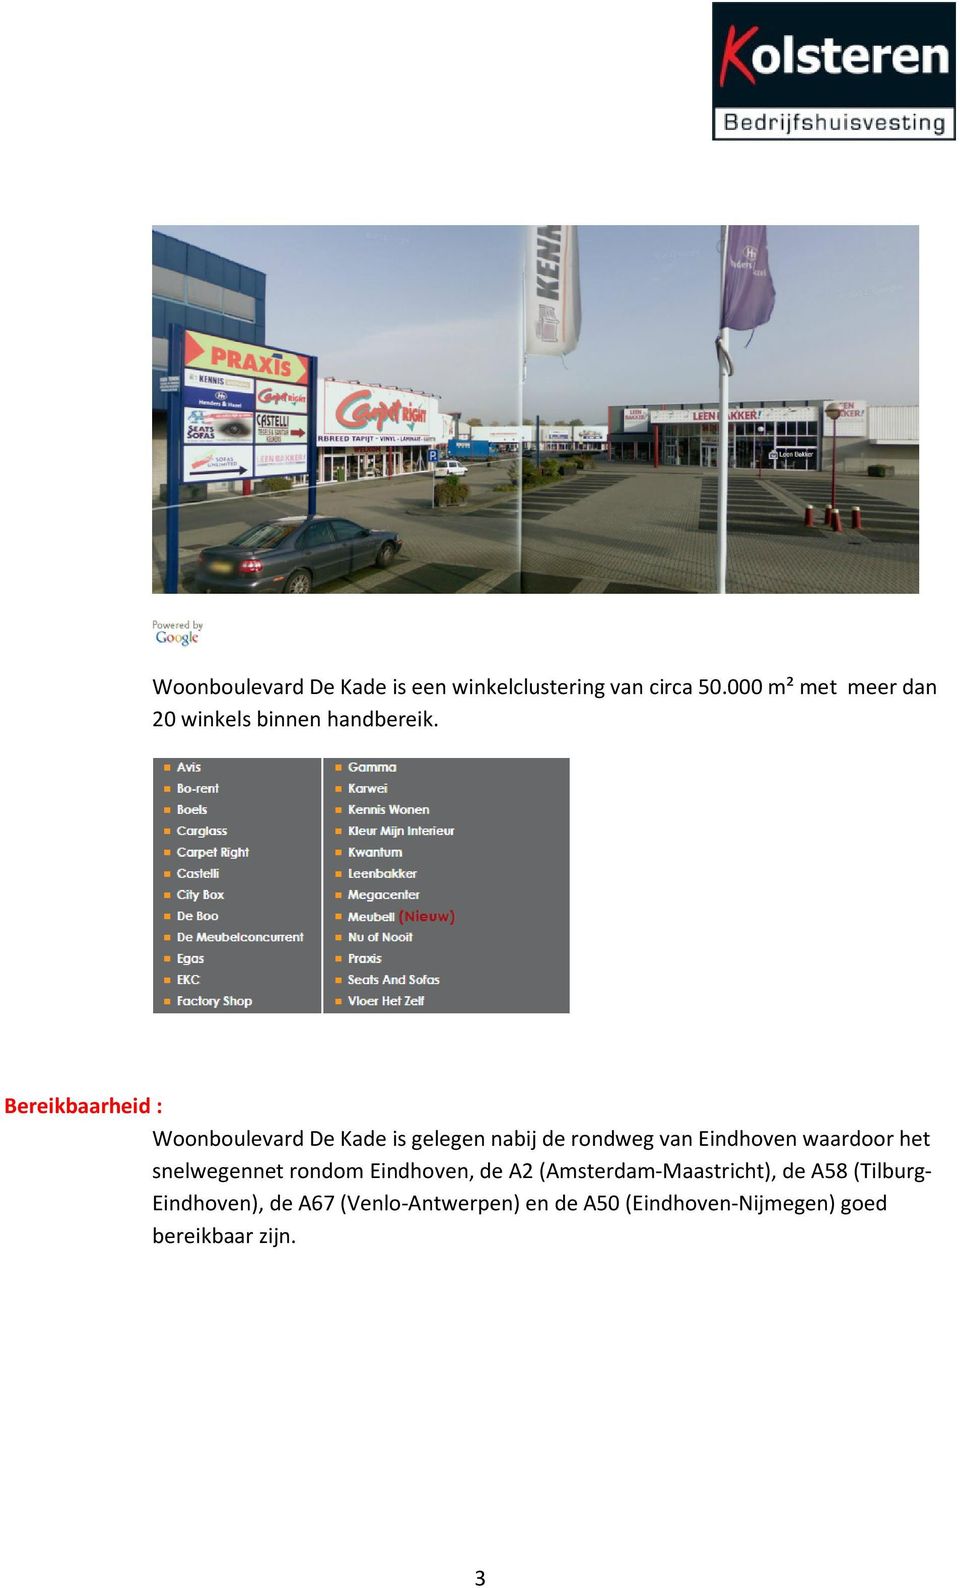 Bereikbaarheid : Woonboulevard De Kade is gelegen nabij de rondweg van Eindhoven waardoor